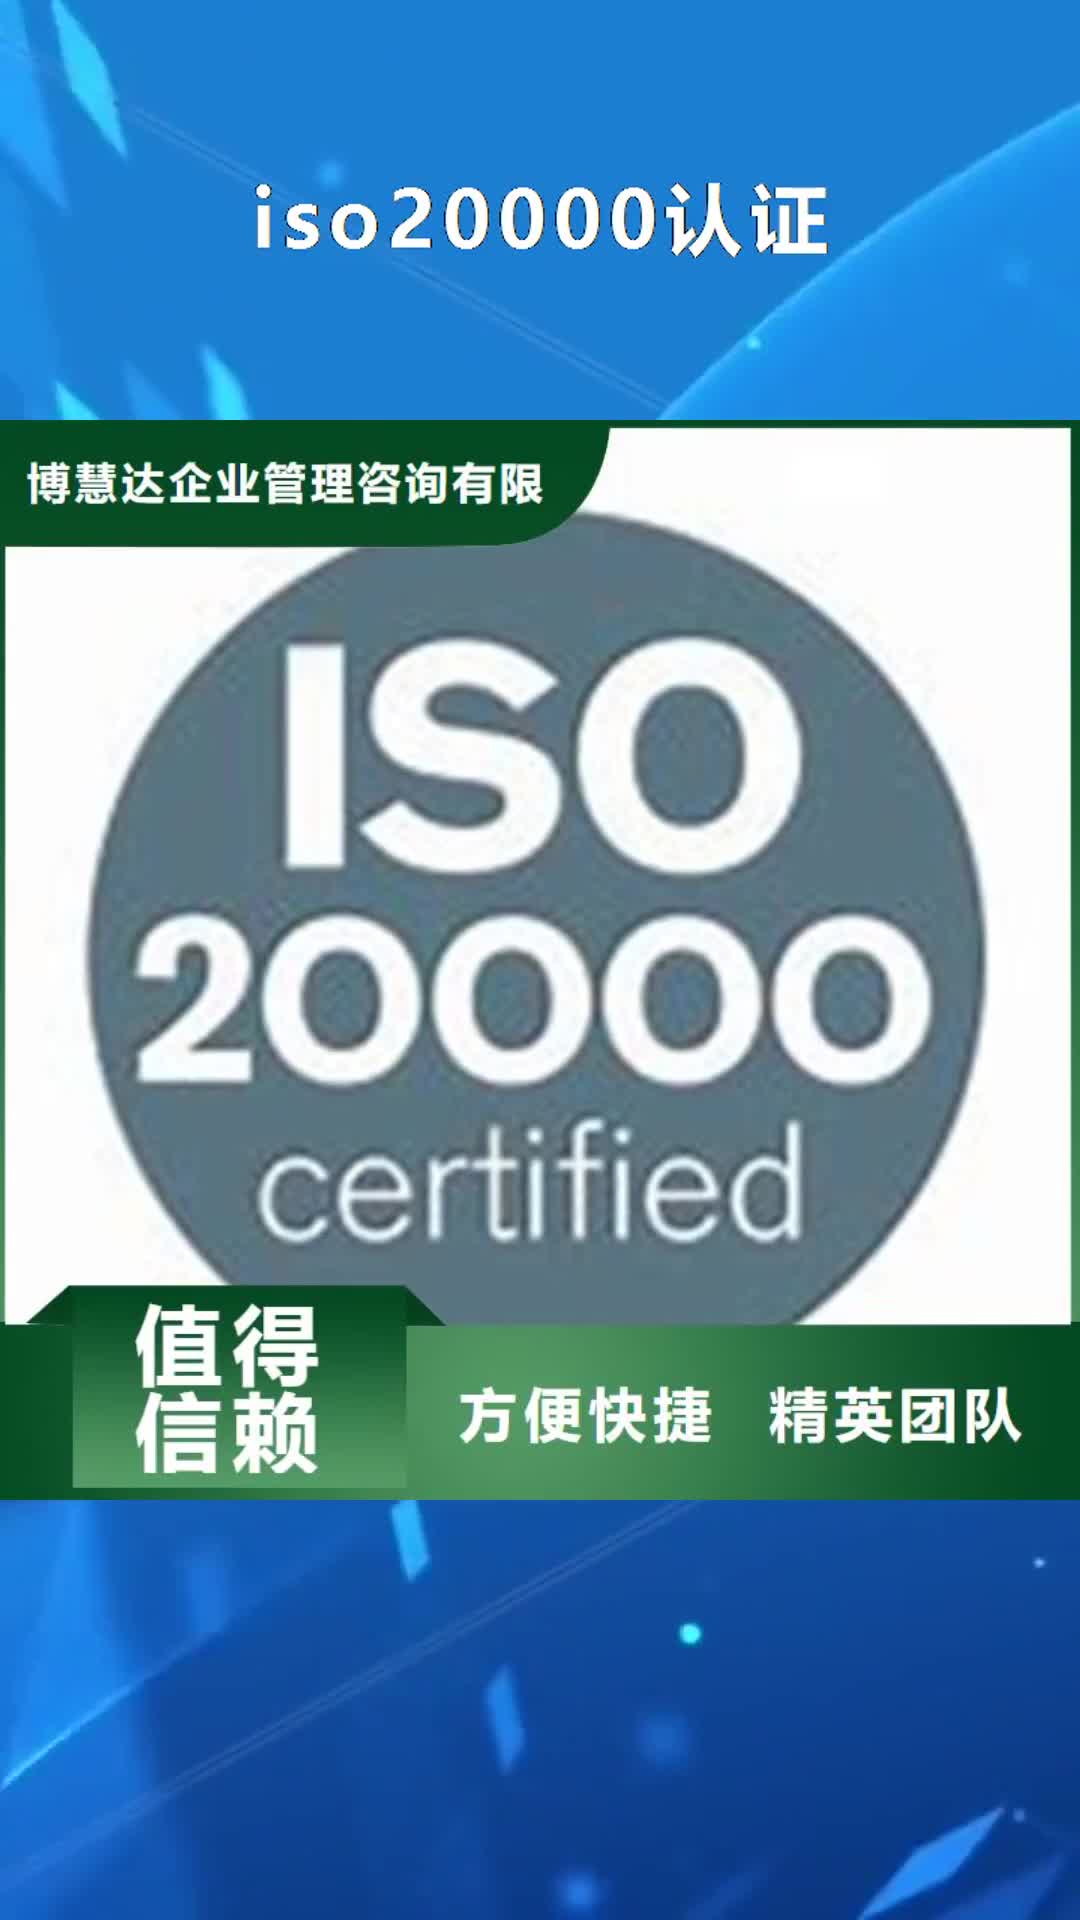 【阜新 iso20000认证,FSC认证值得信赖】